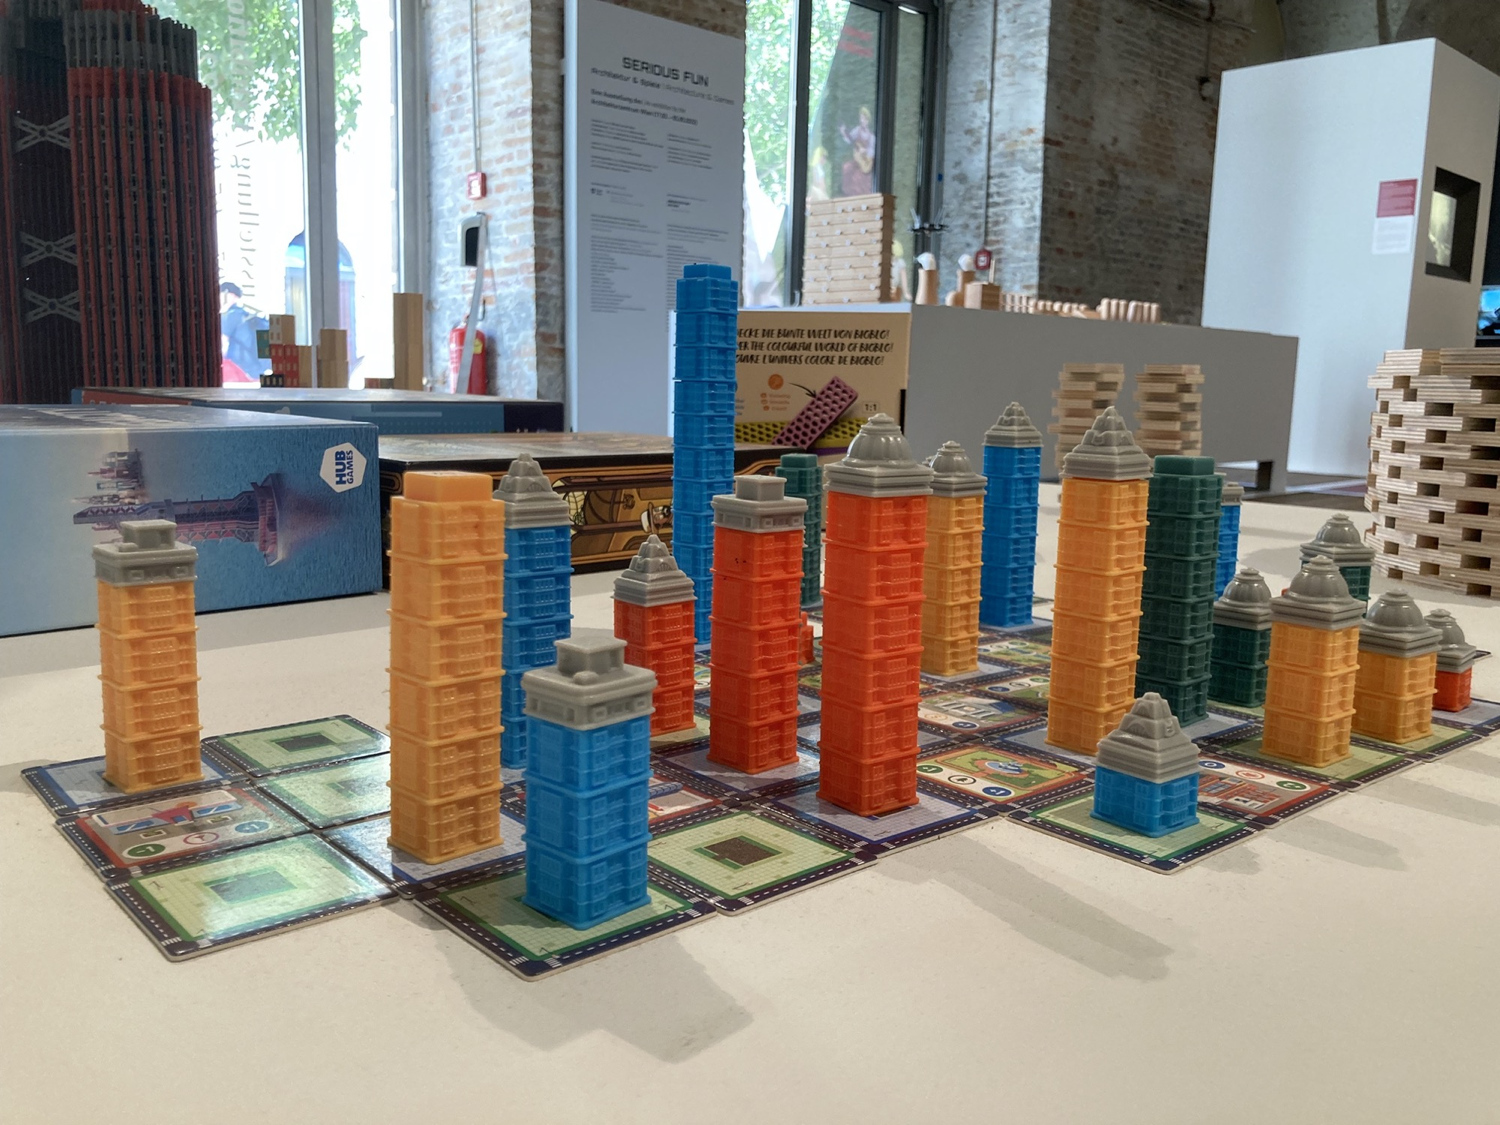 Eingangsbereich der Ausstellung Serious Fun, Detailaufnahme, im Vordergrund ein Brettspiel, bei dem auf quadratischen Karten auf dem Tisch Türme in unterschiedlichen Farben und Größen aufgebaut sind